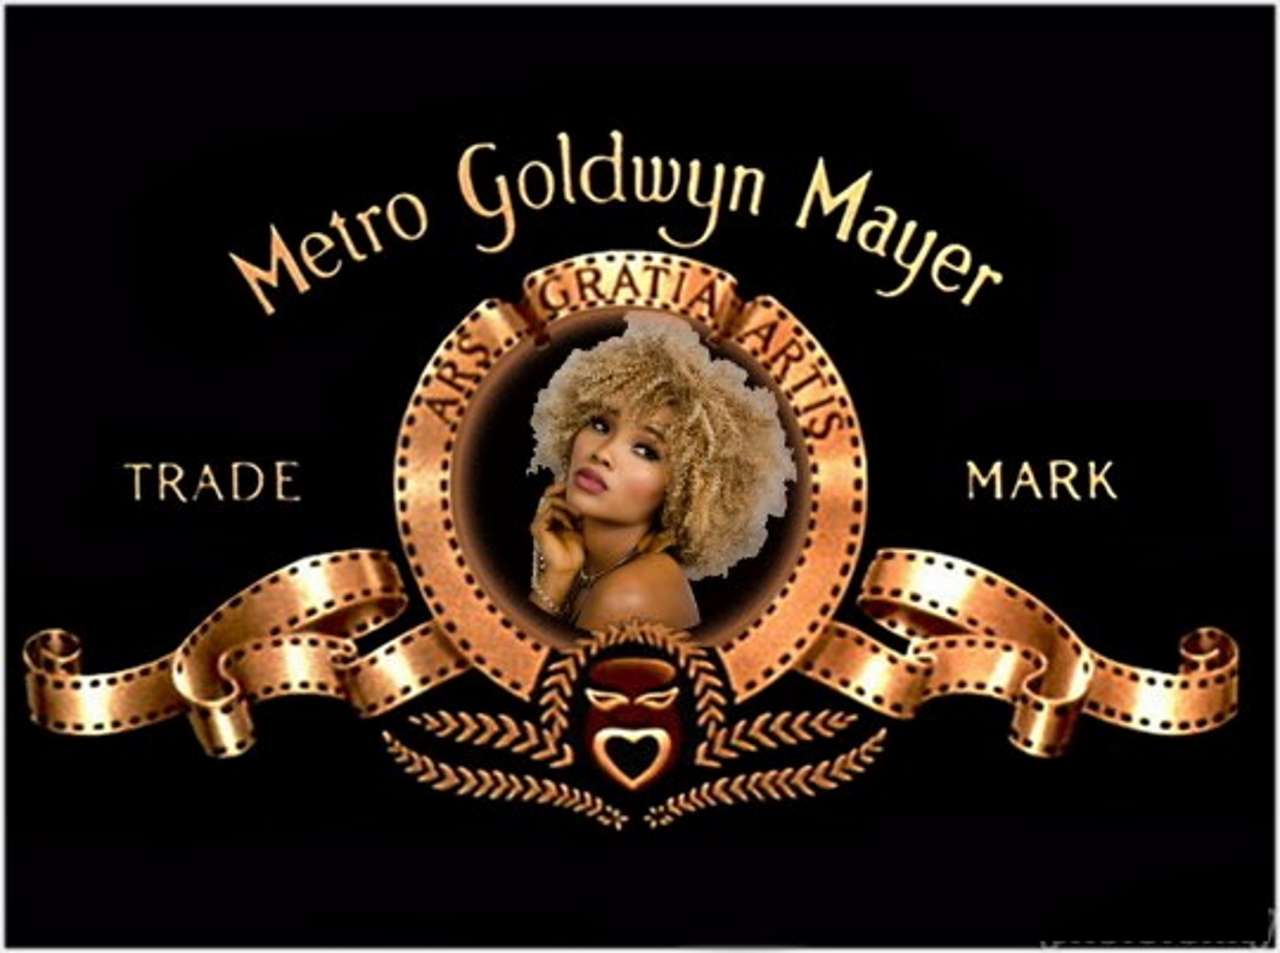 Modello MGM puzzle online da foto